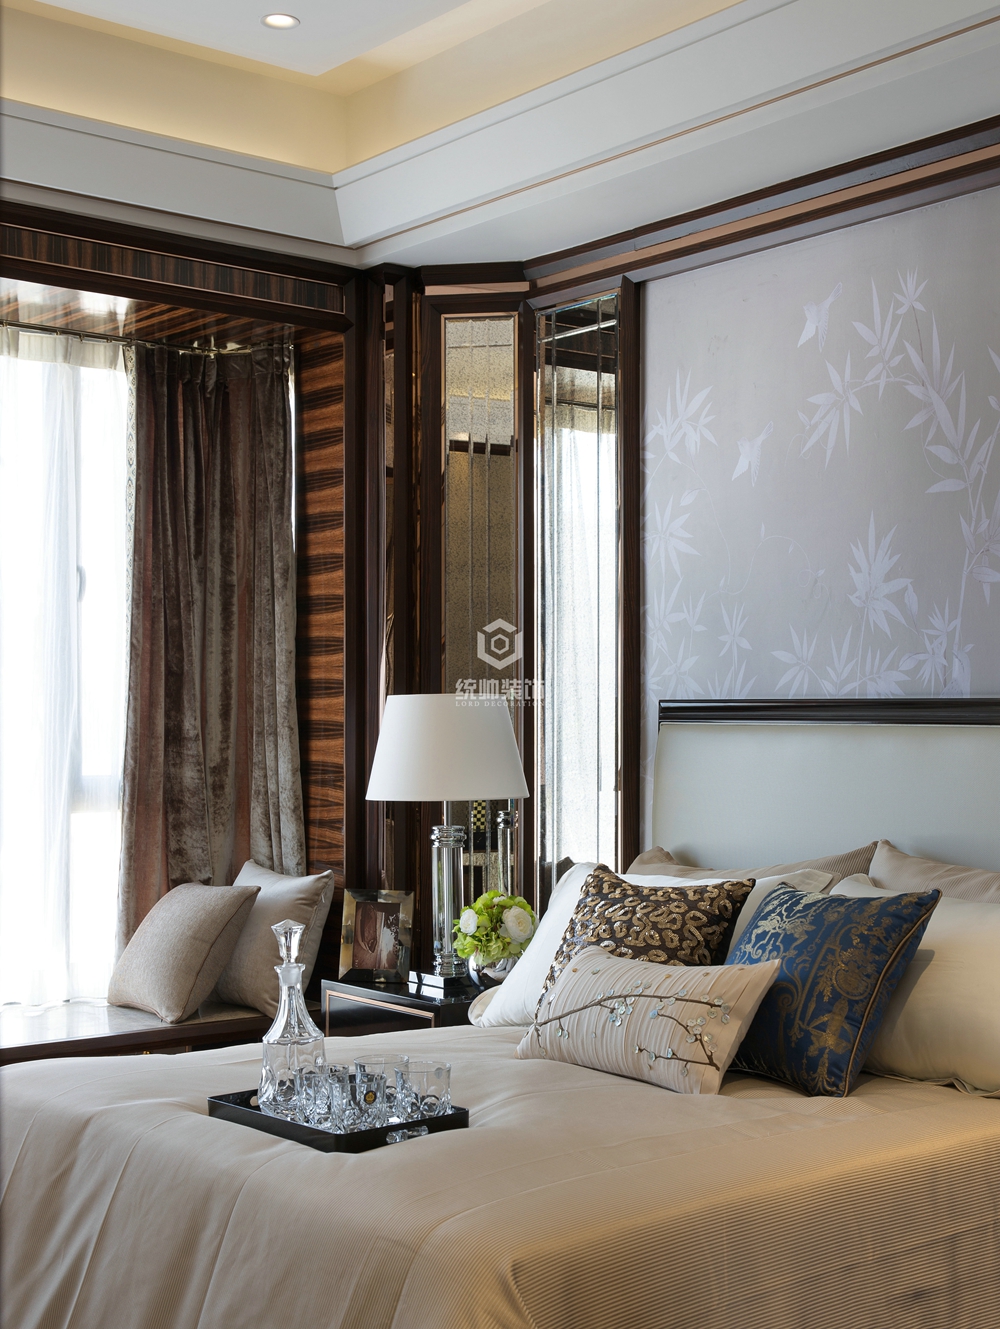 浦东新区善上居85平方新古典风格三室两厅卧室装修效果图